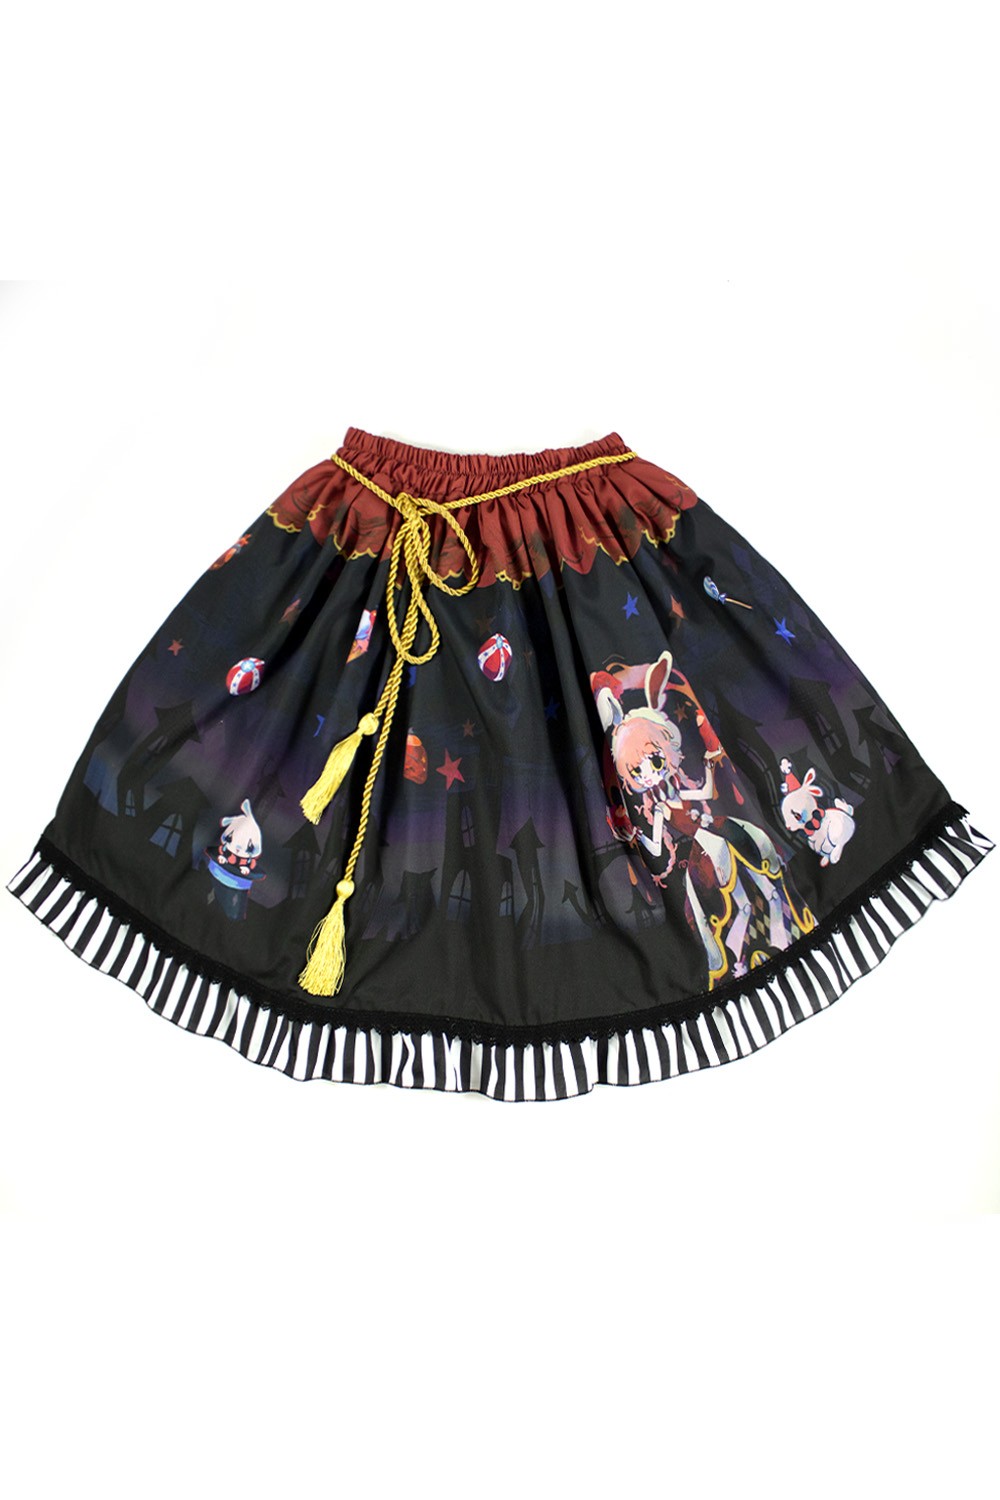 Twisted Circus Skirt